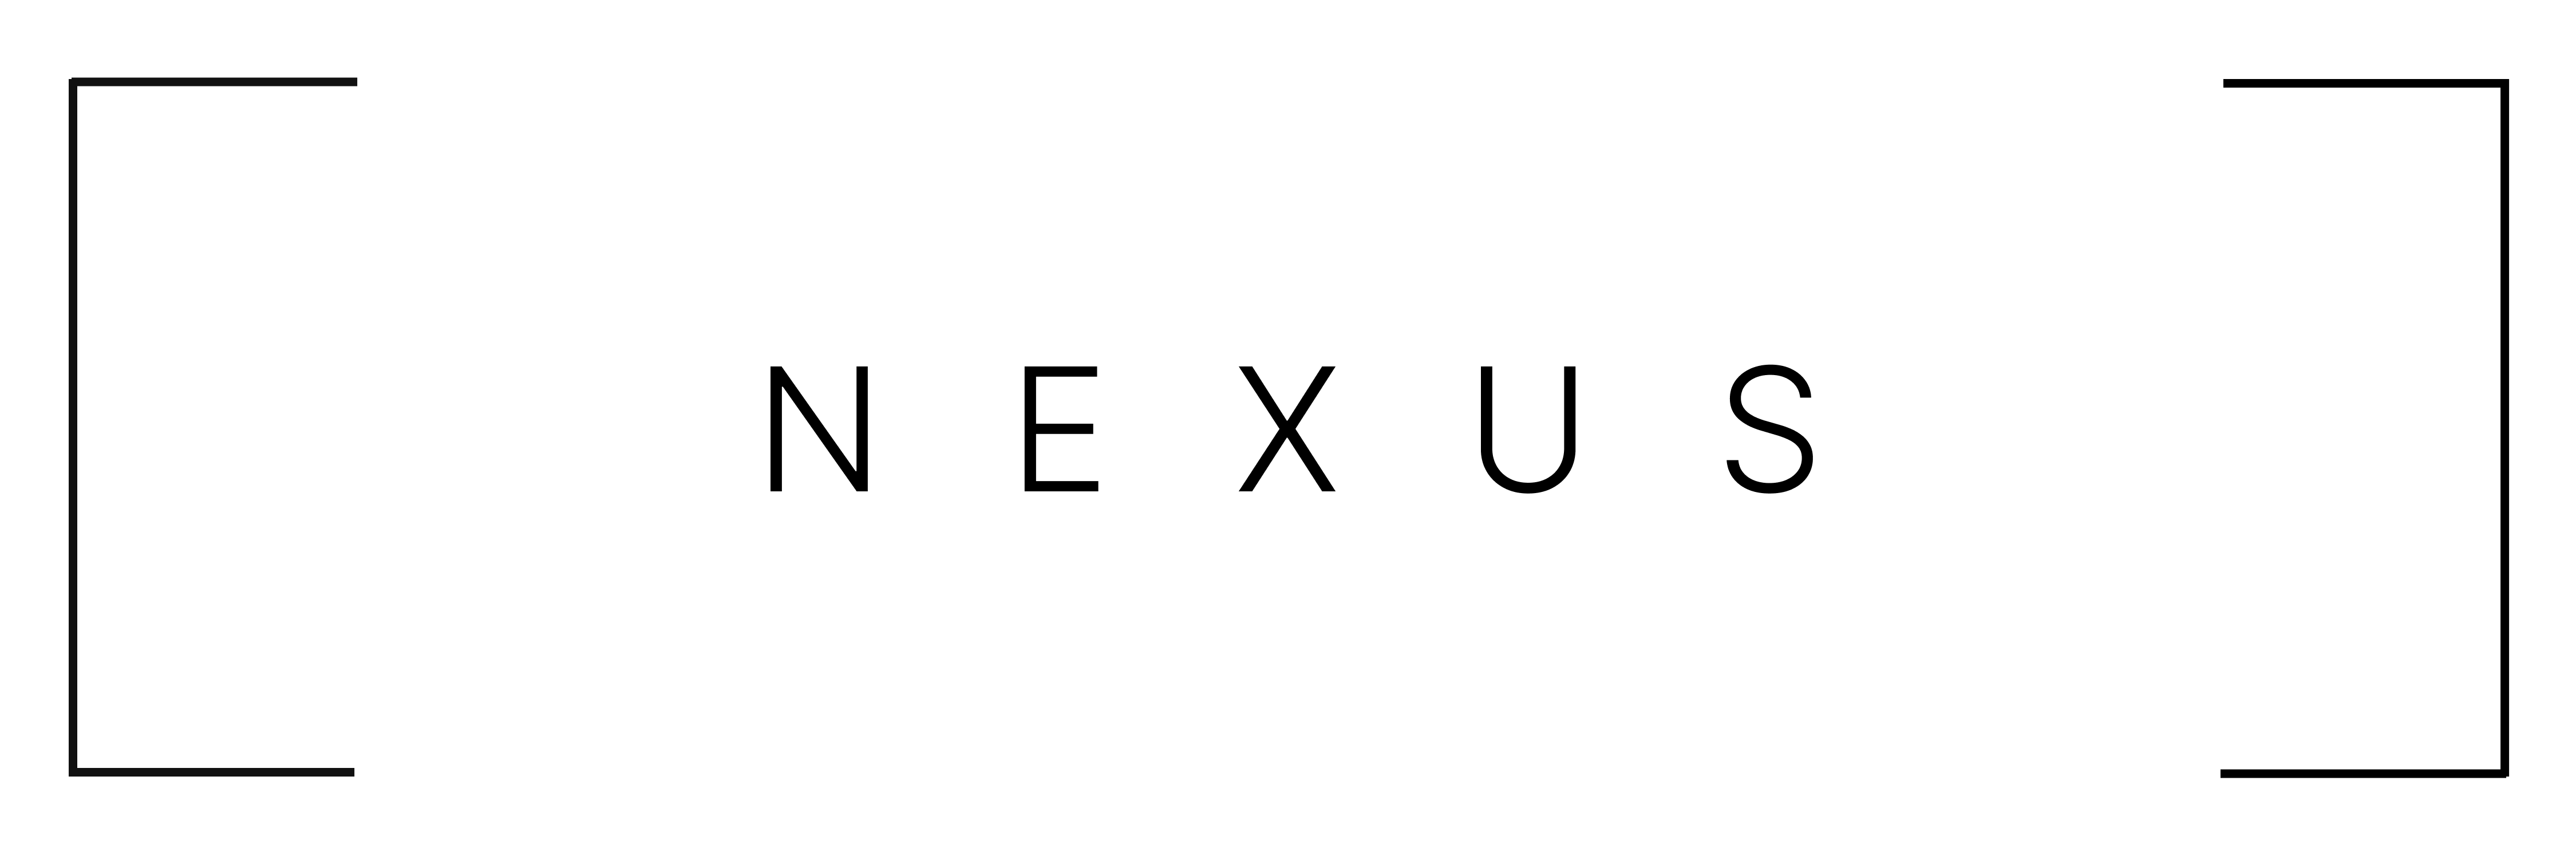 Nexus: Zero Knowledge Proofs, at Scale